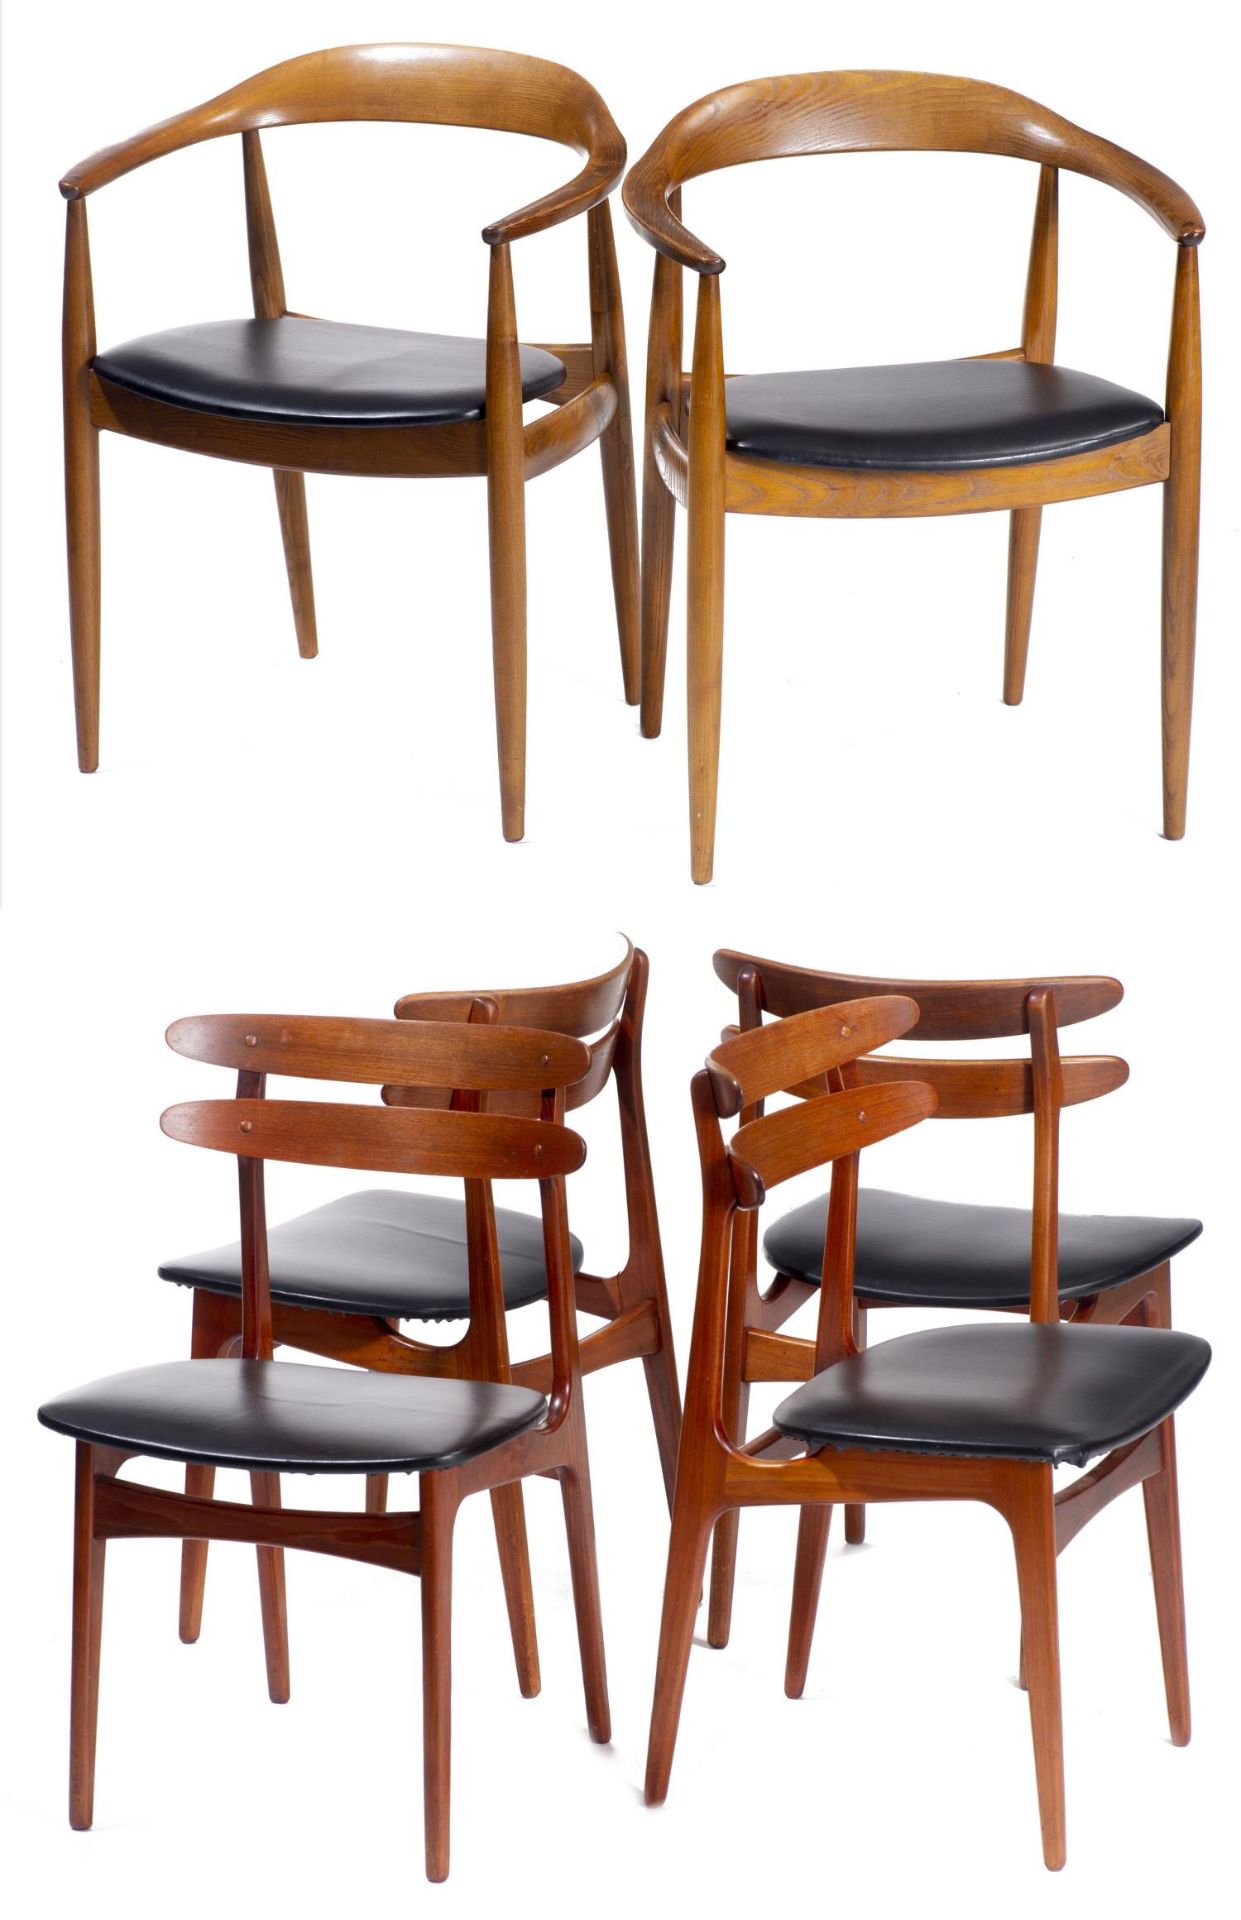 Quatre chaises en teck et deux fauteuils en chêne de style scandinave